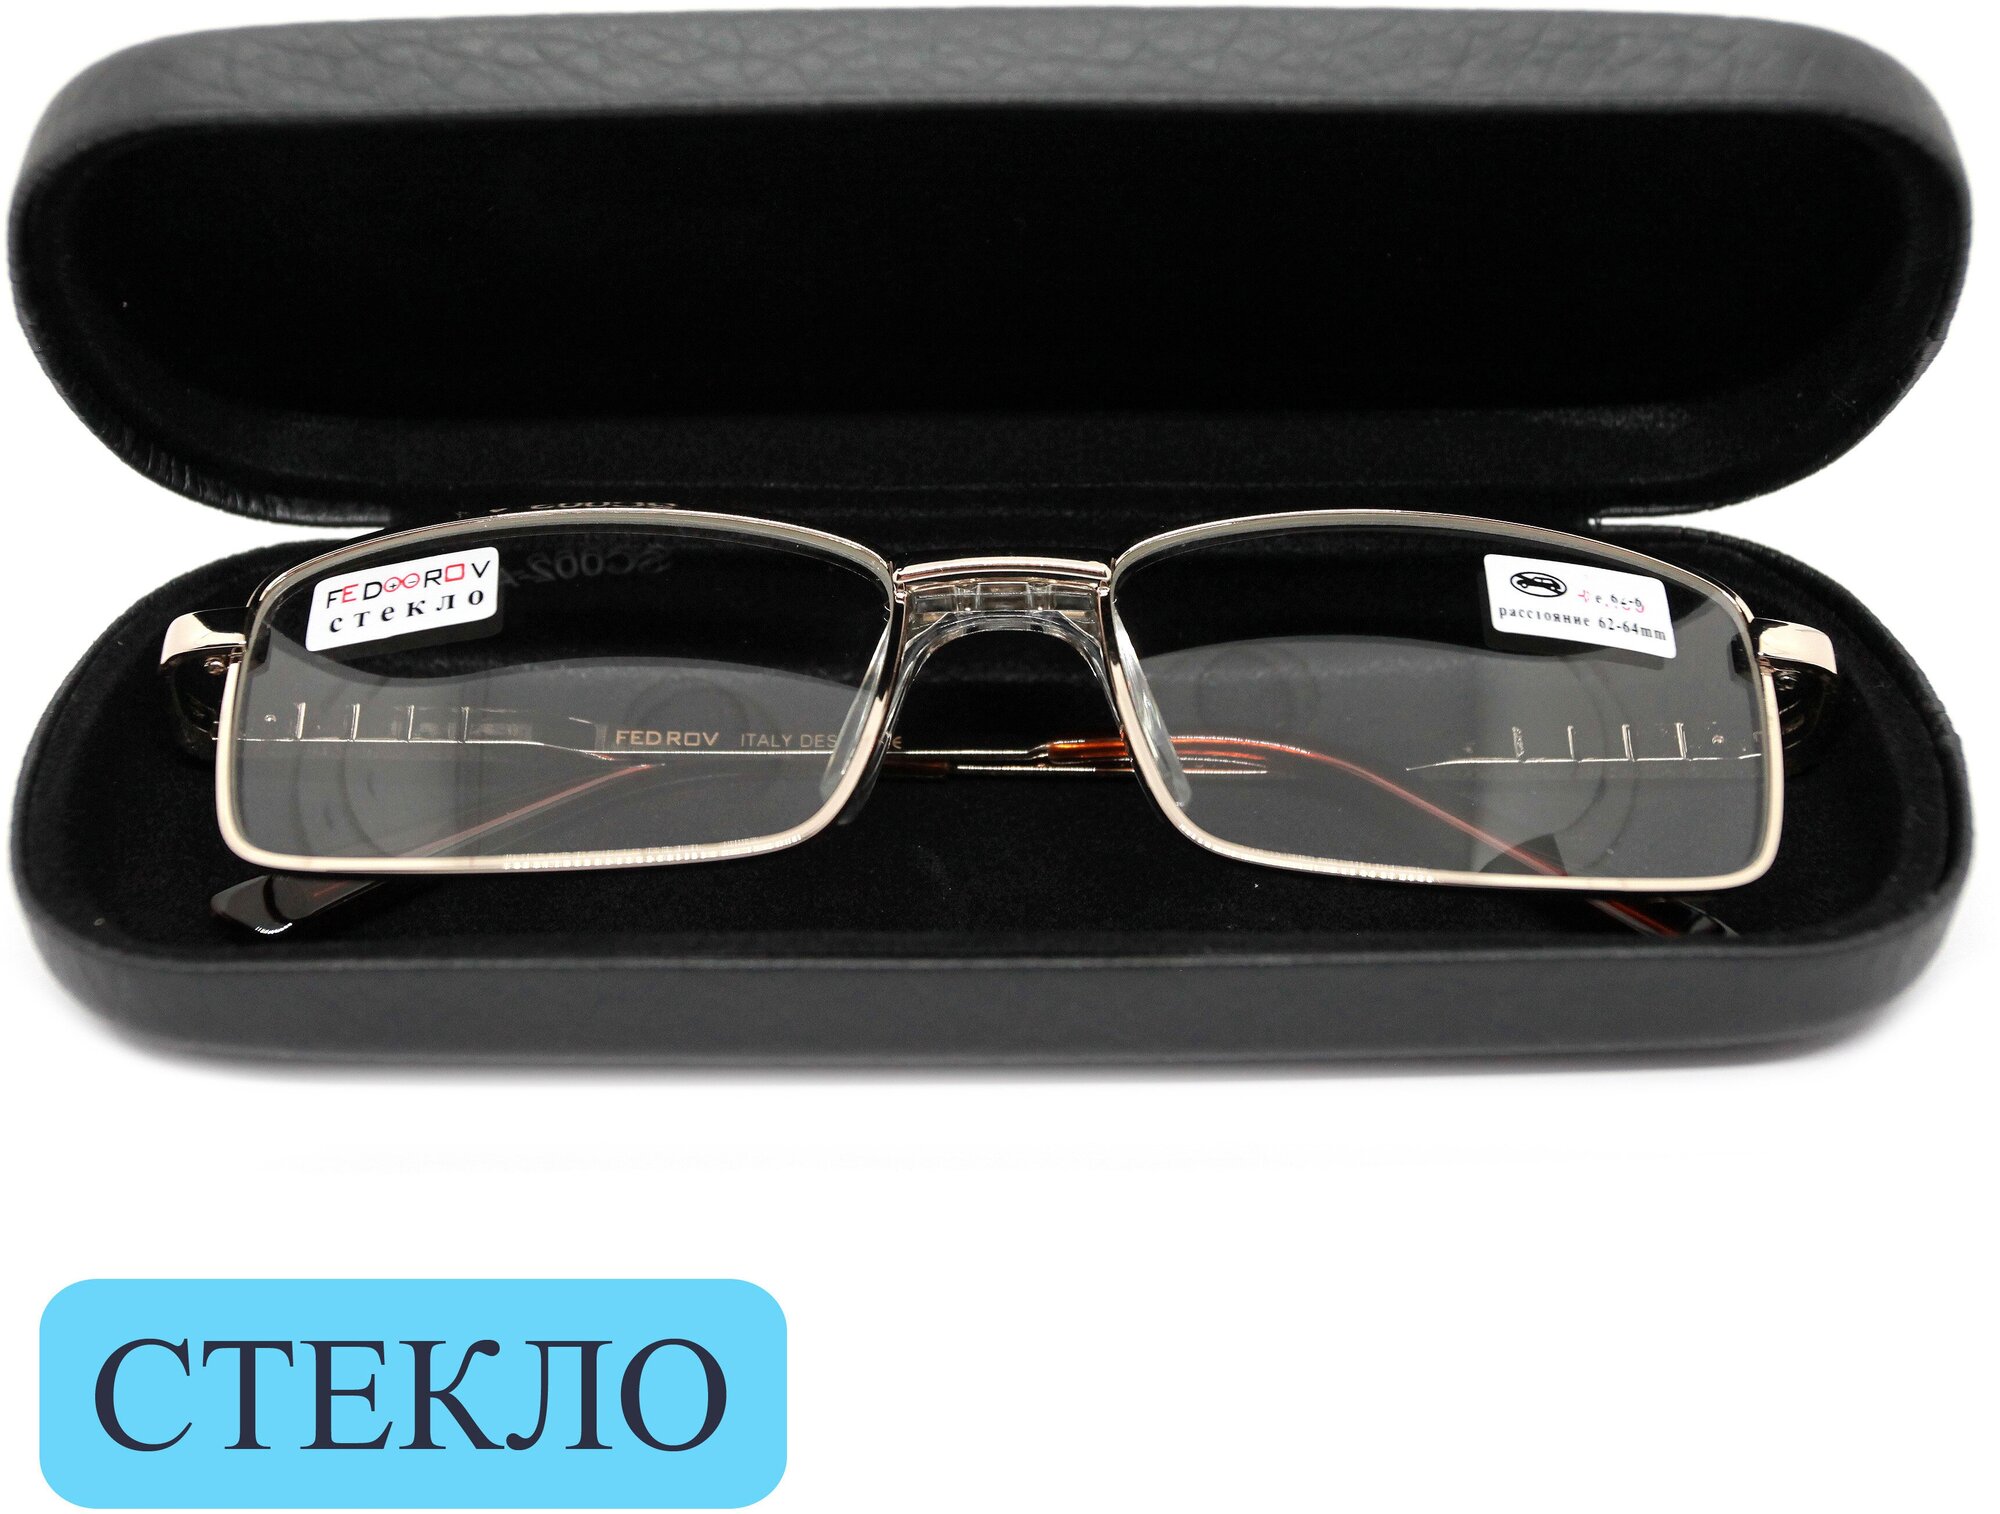 Готовые очки стекло со сплошным носоупором (+0.75) с футляром, FEDROV 109 M1, линза стекло, цвет золотой, РЦ62-64